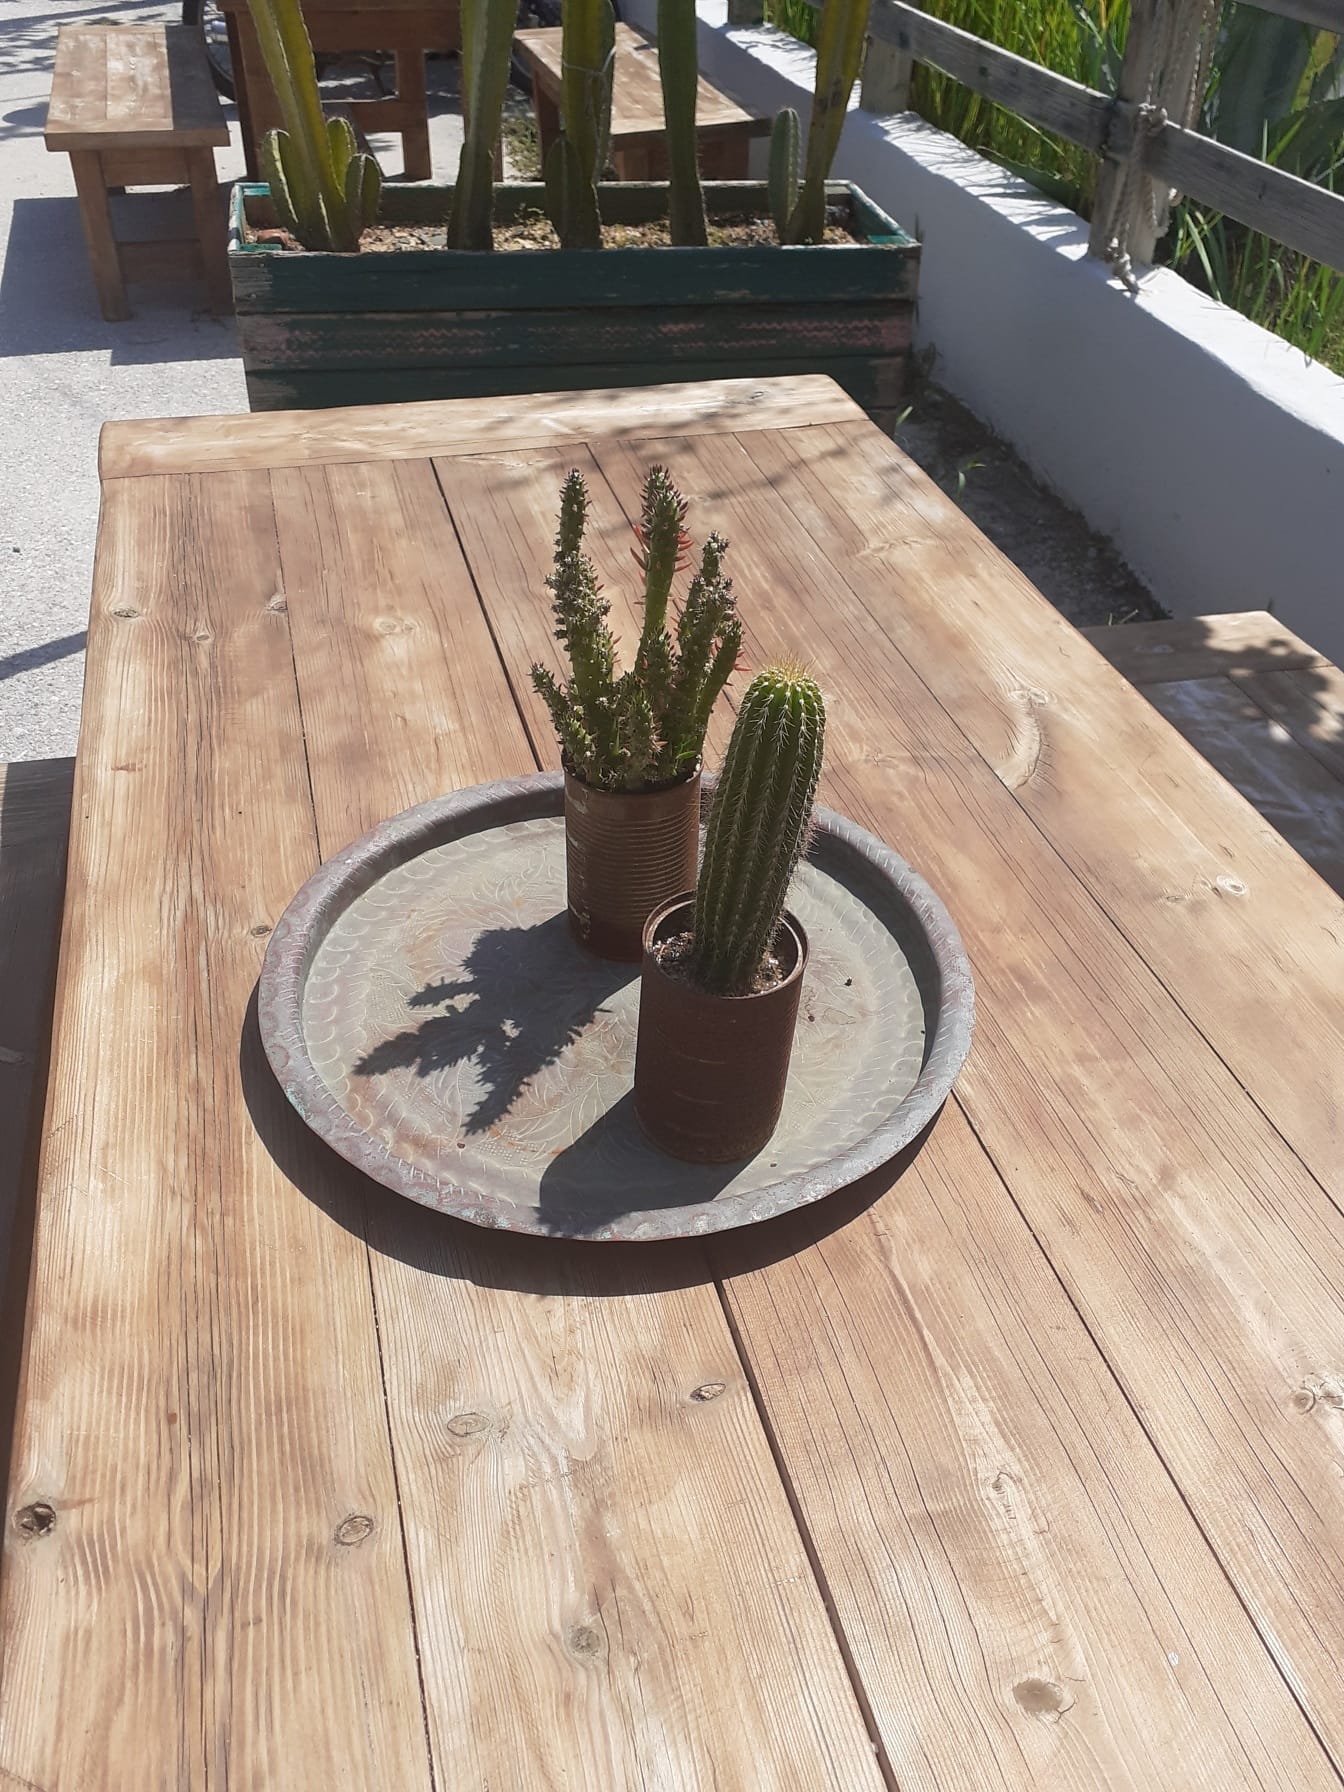 Kaktusové rastliny na drevenom stole v hrdzavom plechovke môže kvetináč